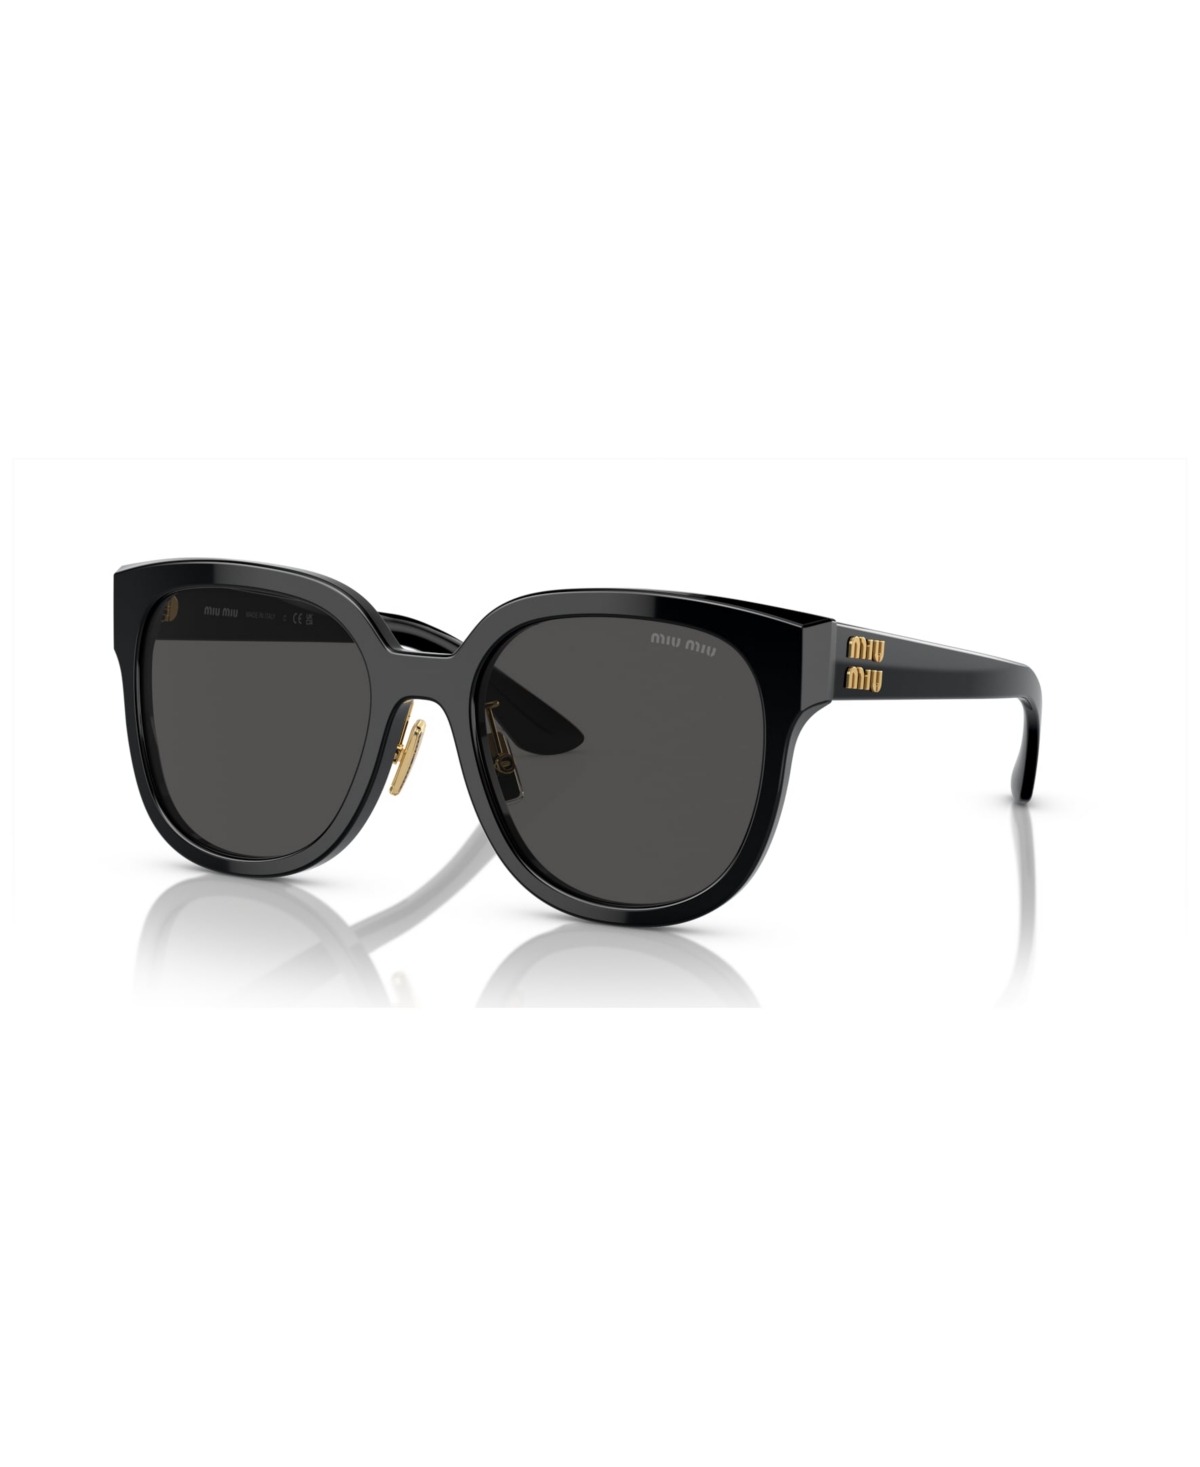 Miu Miu Women's Sunglasses Mu 01zs In Black